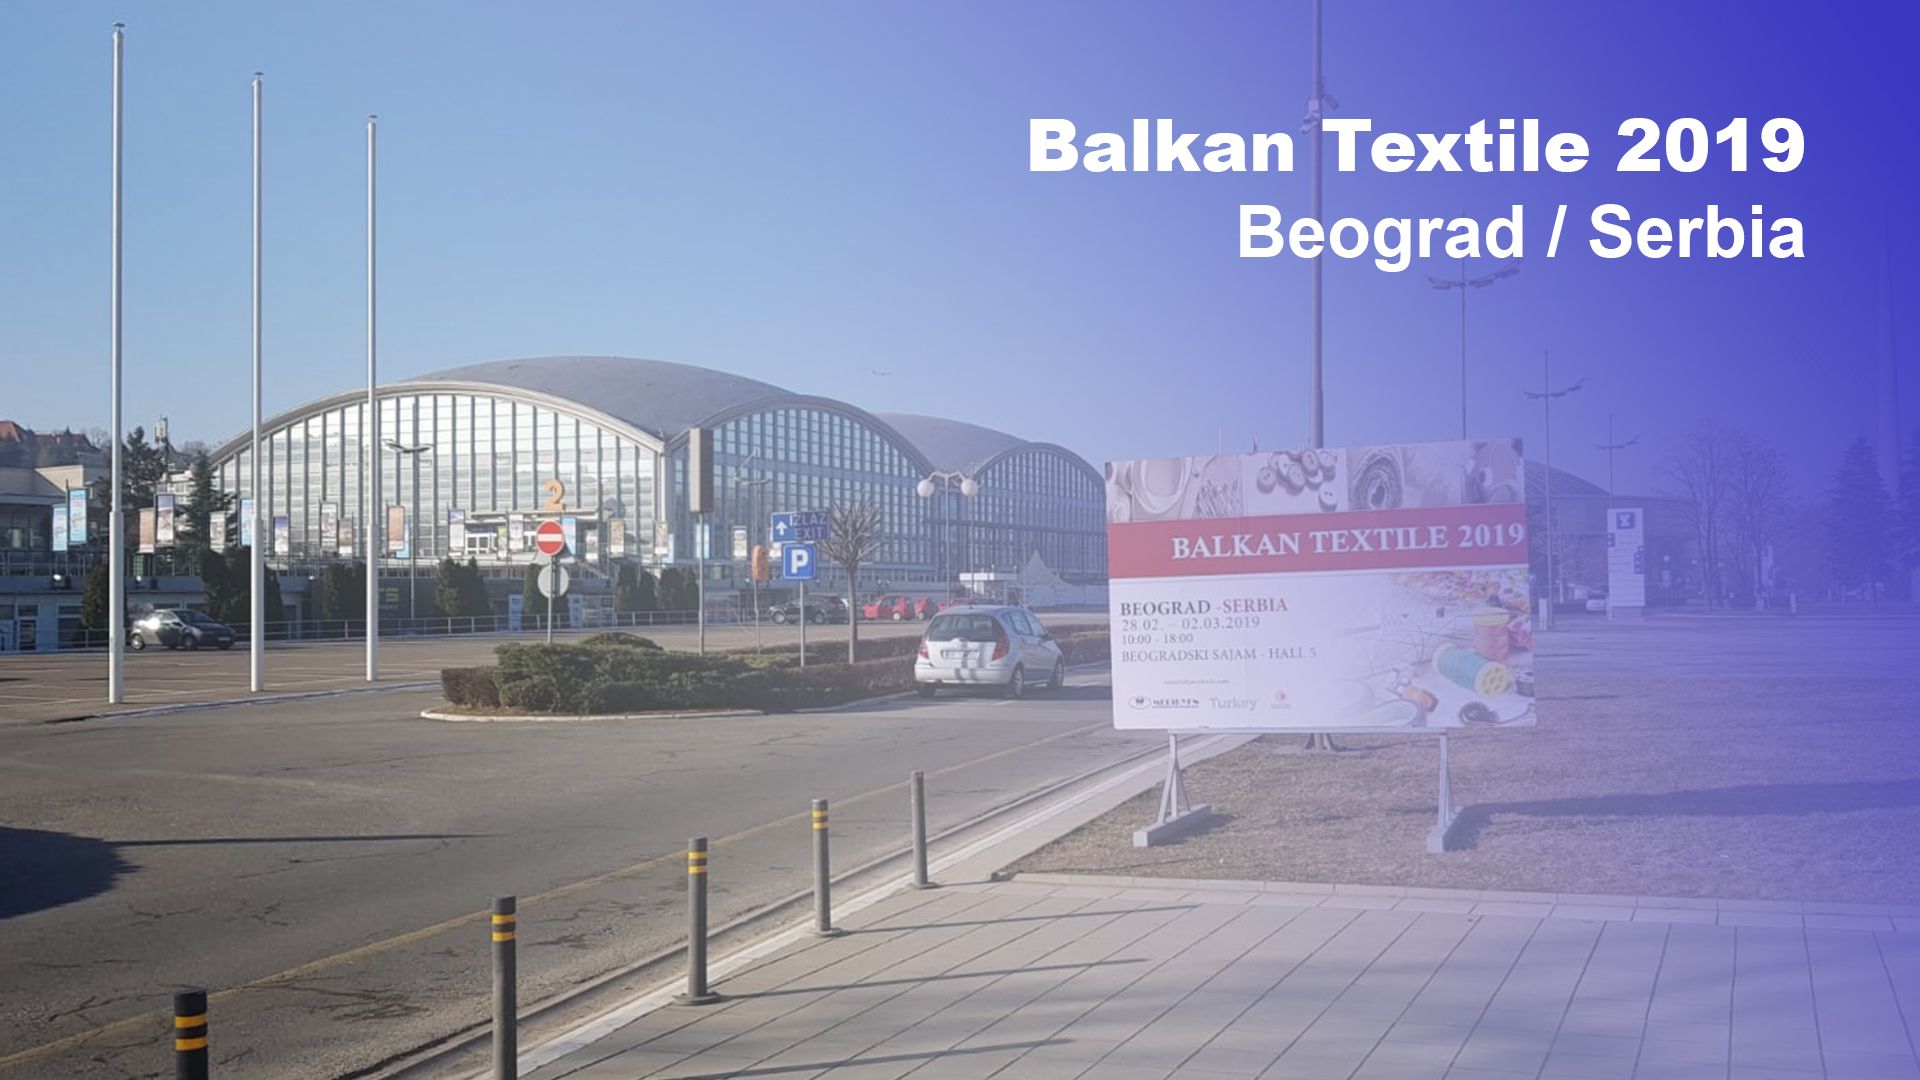 Balkan Textile 2019 Beograd – Serbia